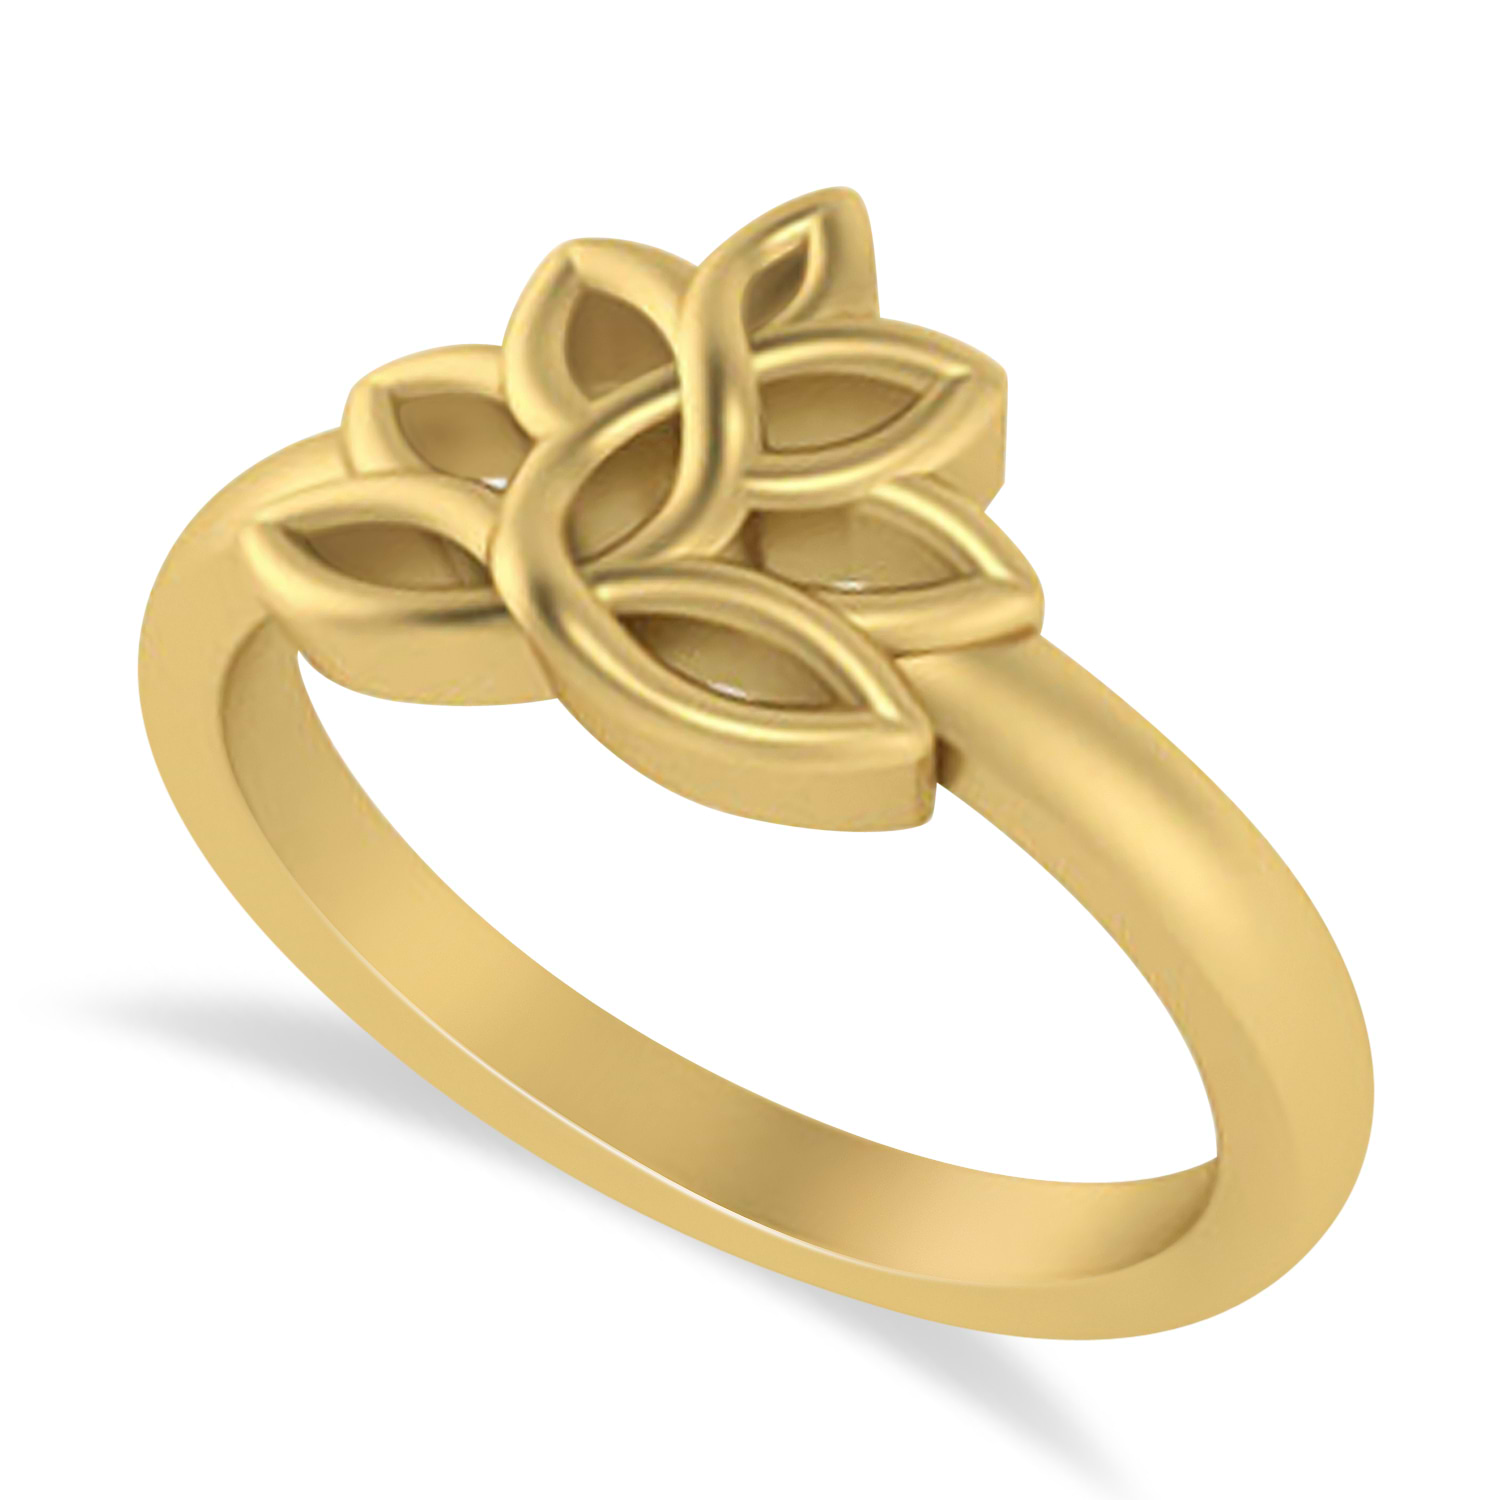 Lotus Flower Fashion Ring 14k Yellow Gold